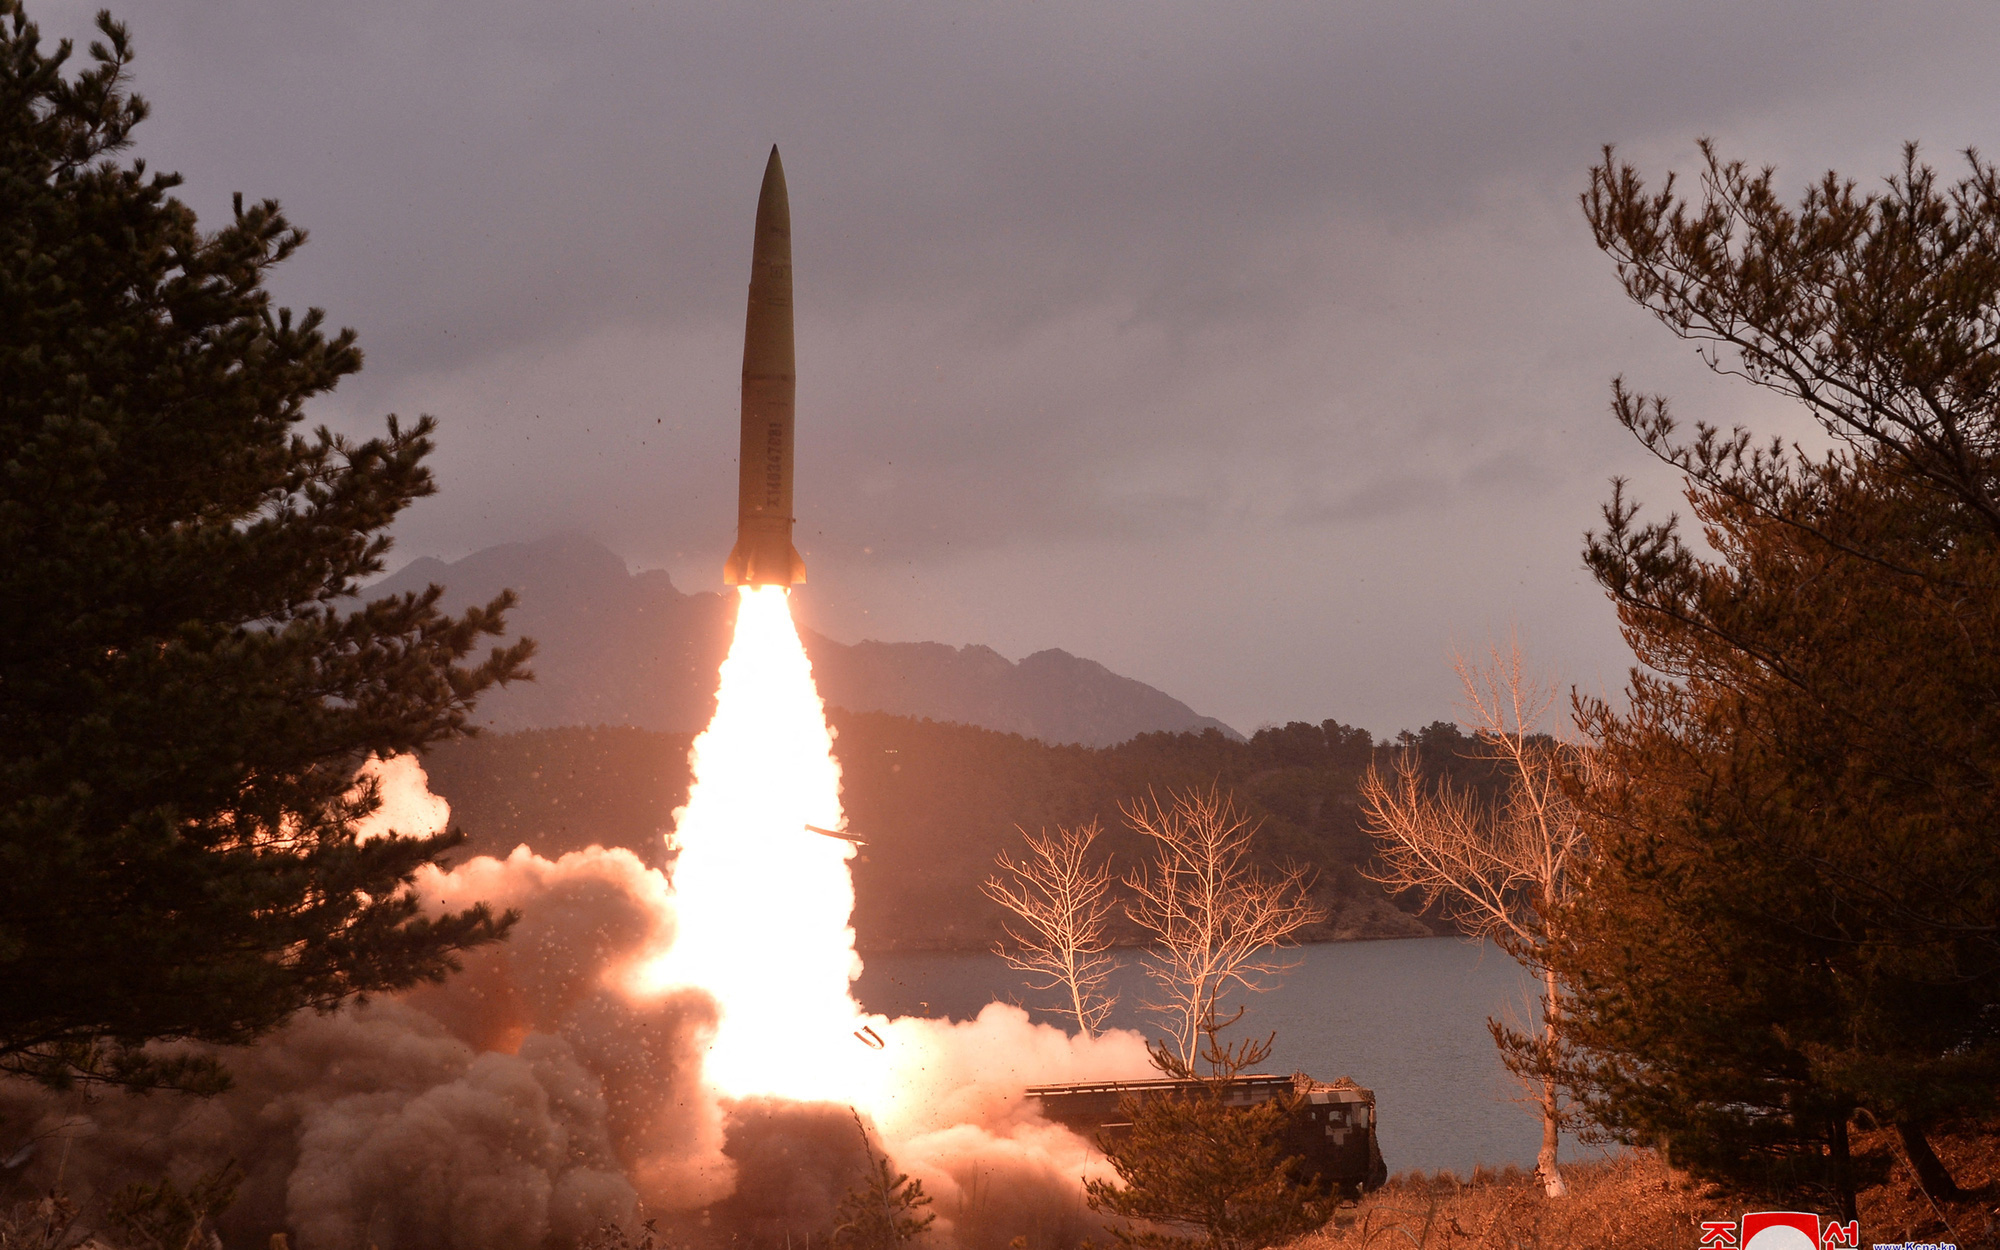 Triều Tiên bắn tên lửa đạn đạo bay 800km về phía Nhật Bản